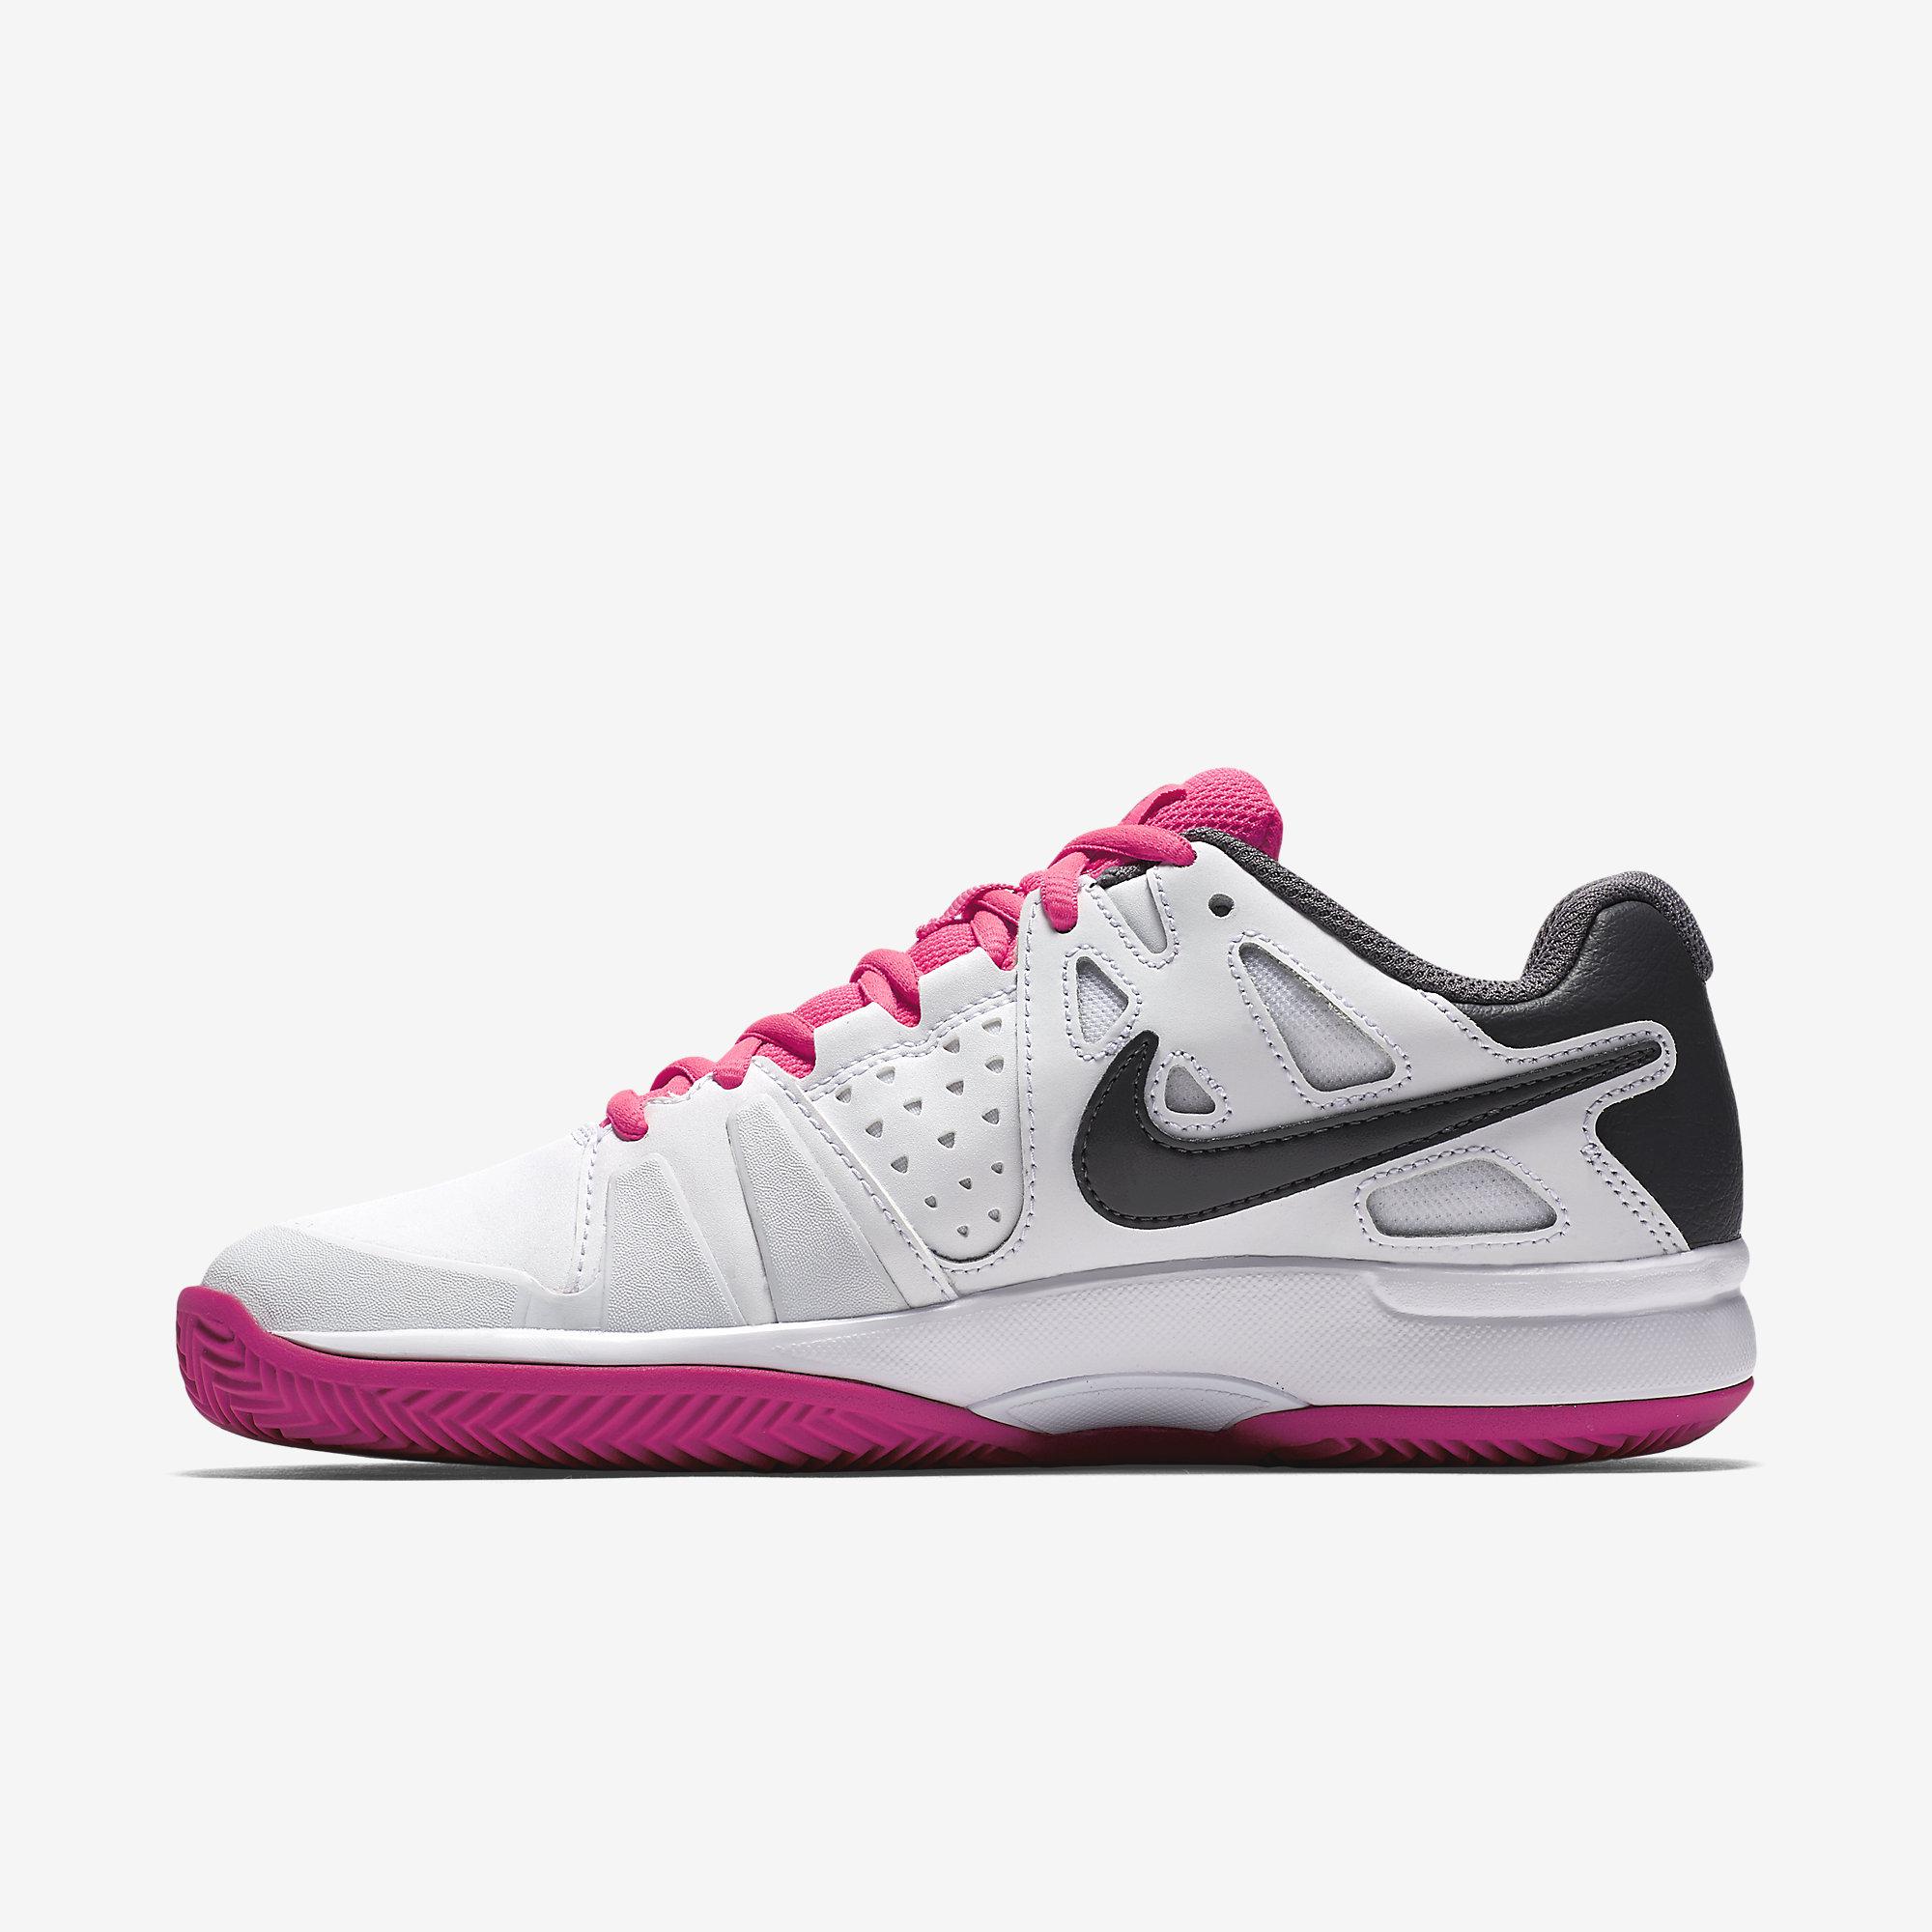 Nike Womens Air Vapor Advantage Clay Court Tennis Shoes - White ...